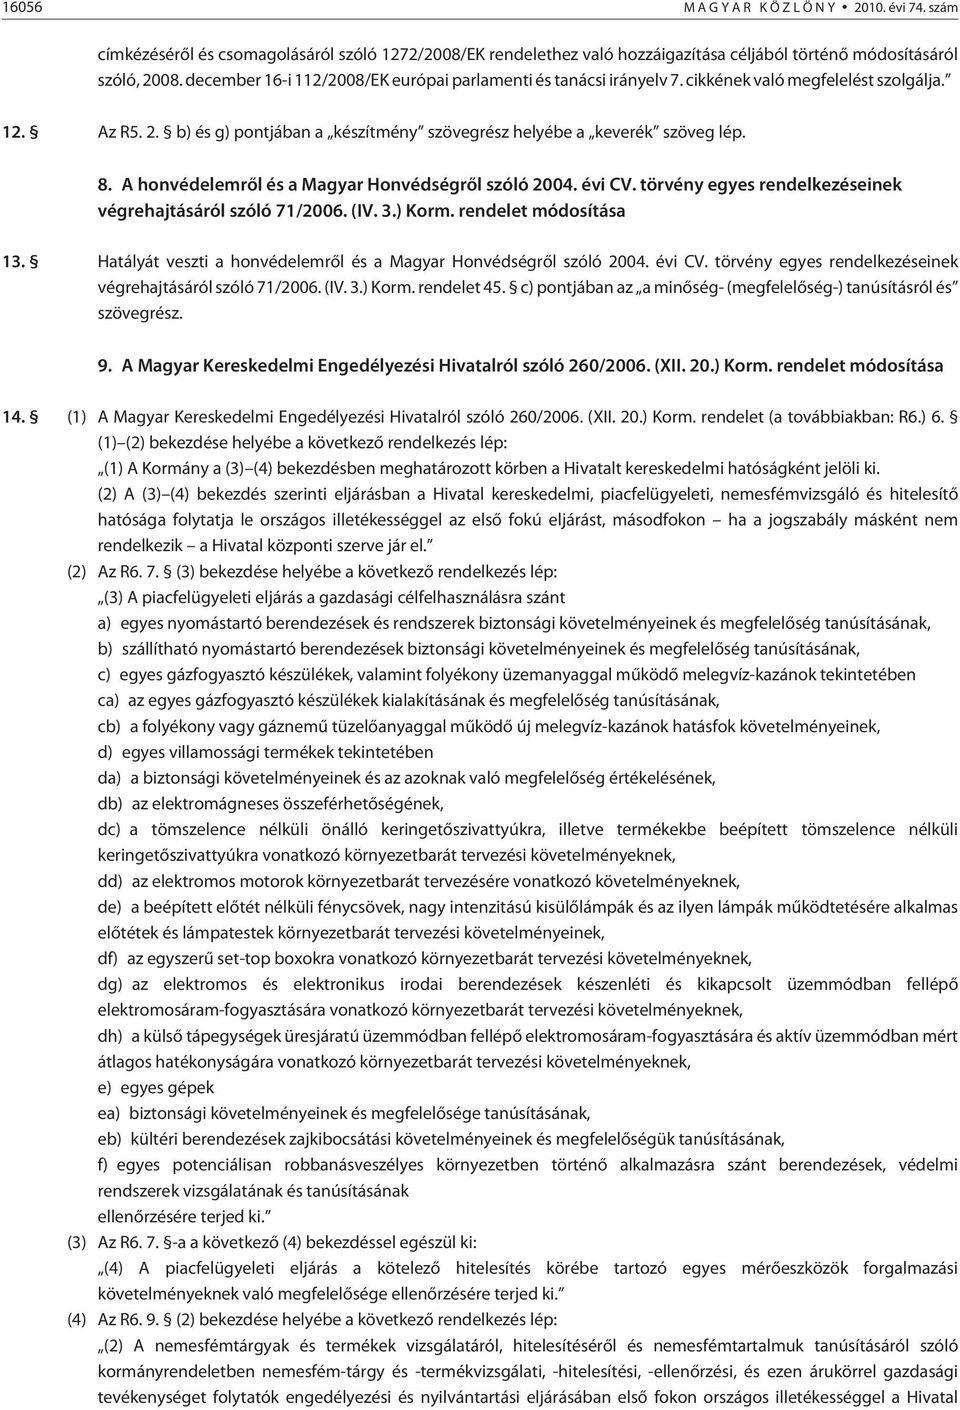 A honvédelemrõl és a Magyar Honvédségrõl szóló 2004. évi CV. törvény egyes rendelkezéseinek végrehajtásáról szóló 71/2006. (IV. 3.) Korm. rendelet módosítása 13.